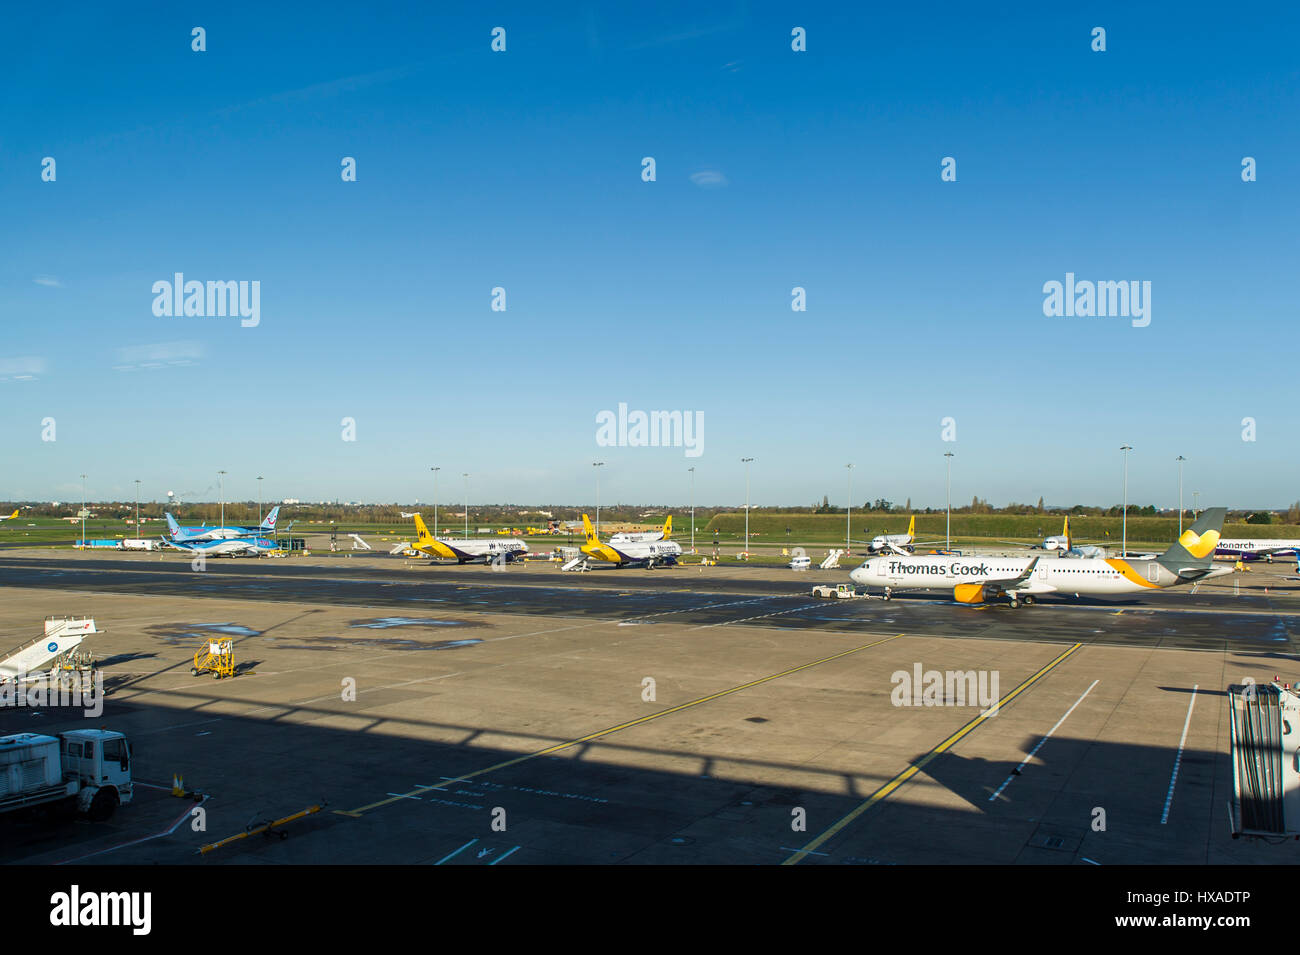 Monarch Flugzeuge aufgereiht am Flughafen Birmingham, UK. Die Fluglinie hat in Verwaltung, die die größte britische Fluggesellschaft Ausfall gegangen. Stockfoto